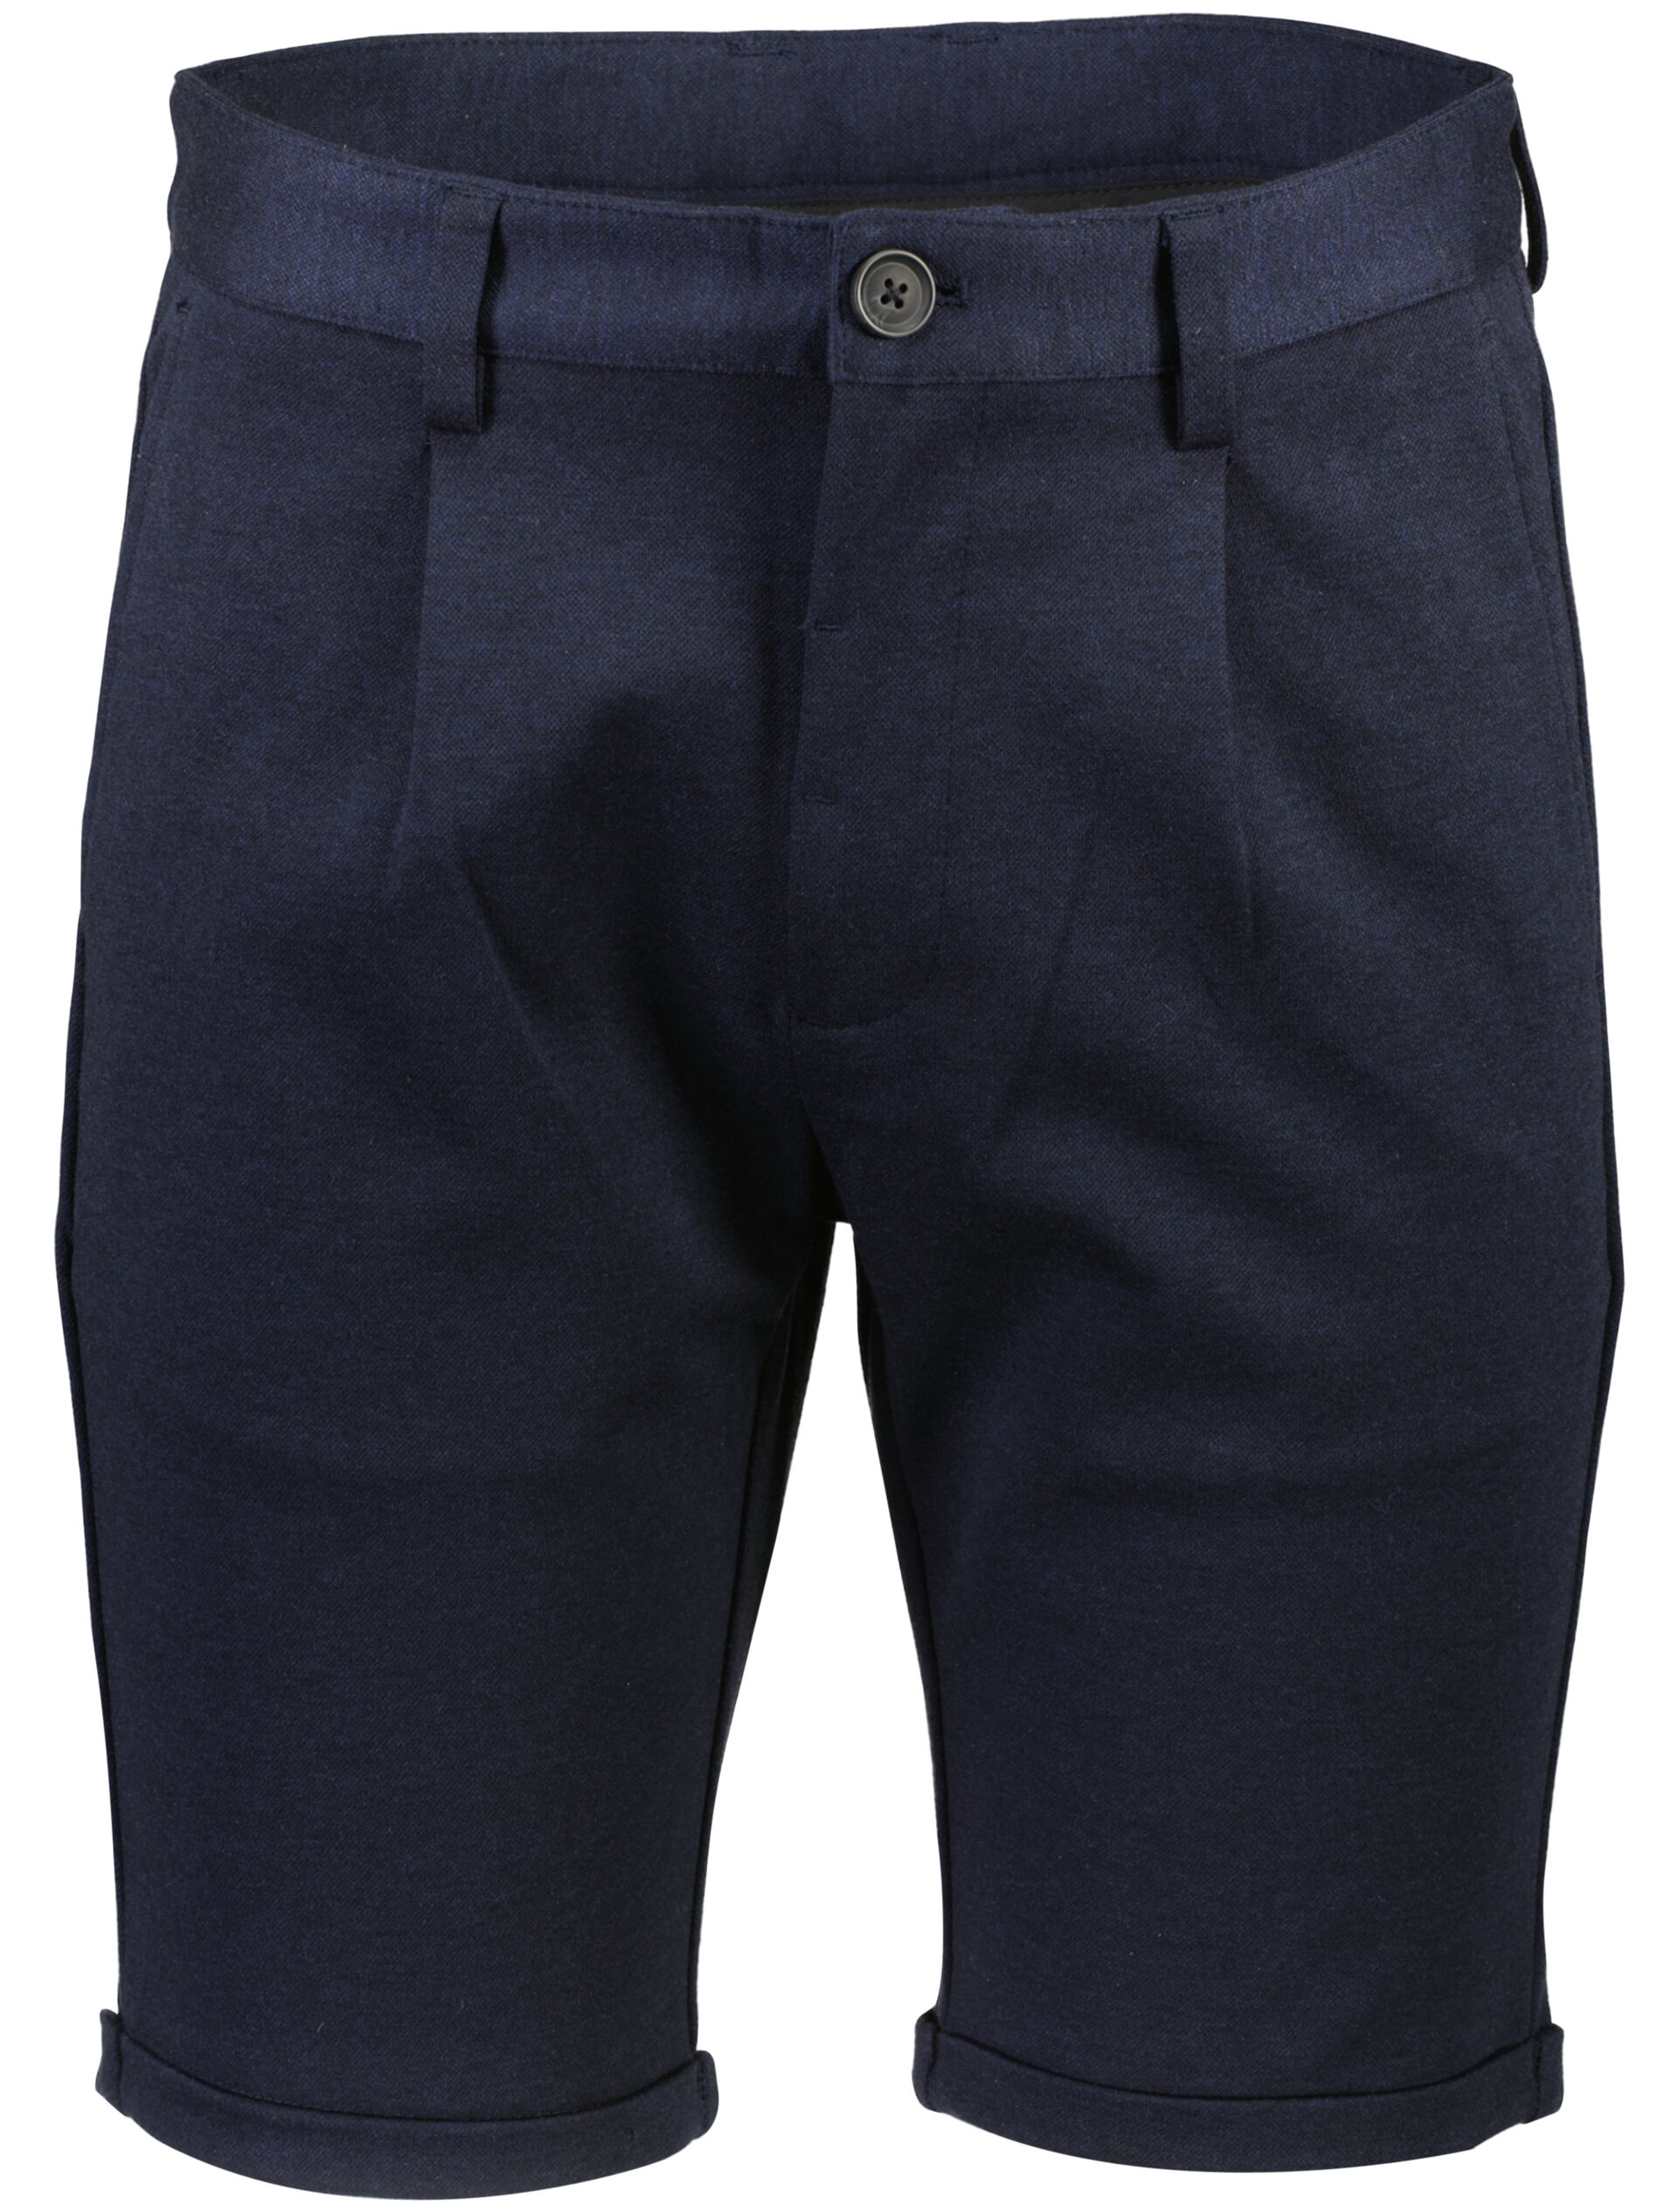 Pantalon korte broek Pantalon korte broek Blauw 30-500039B